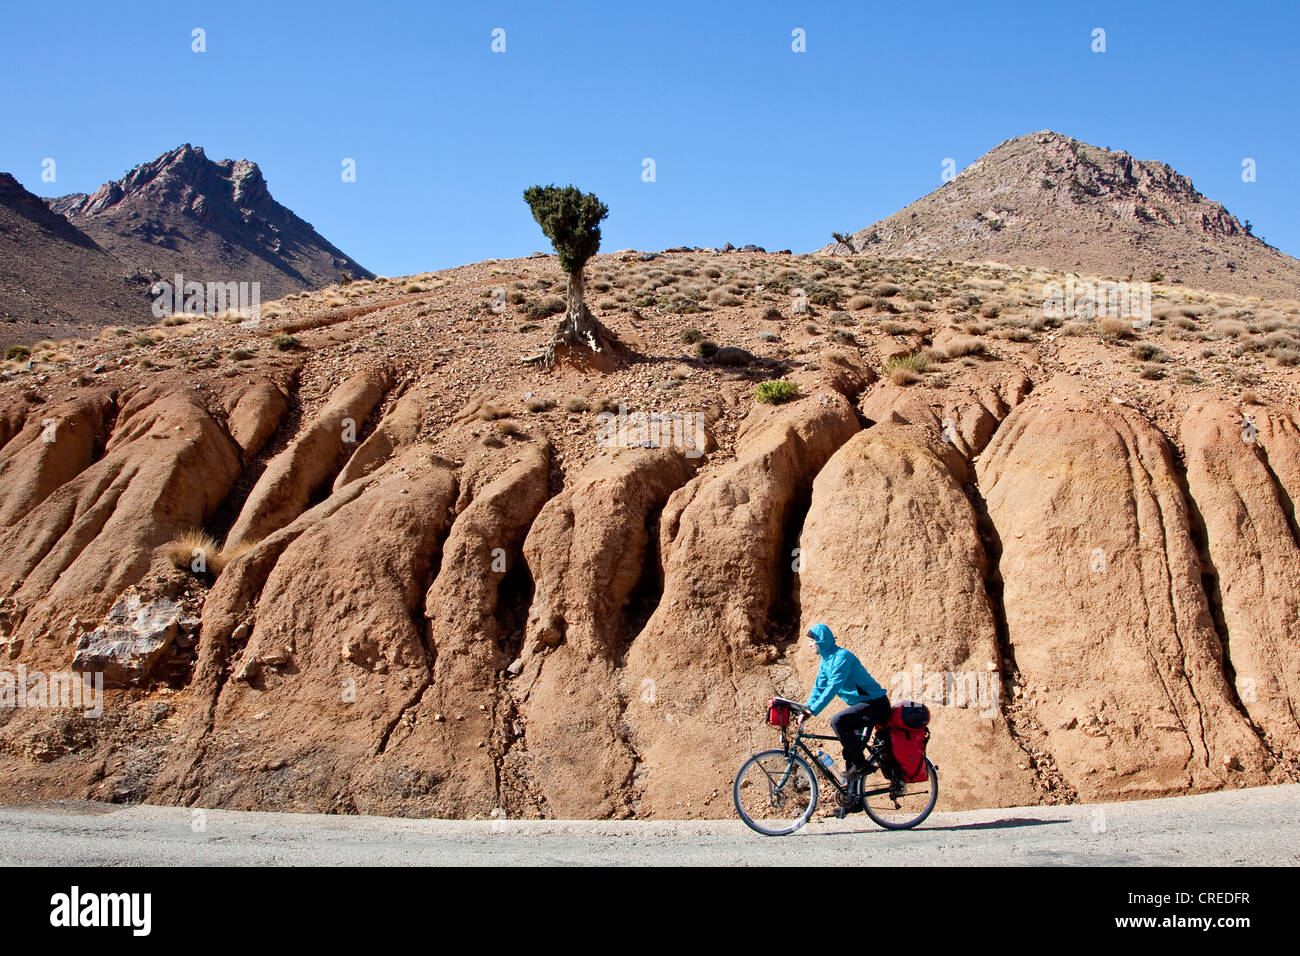 Cyclist en route to Telouet, Ounila Valley, High Atlas Mountains near Ouarzazate, Morocco, Africa Stock Photo